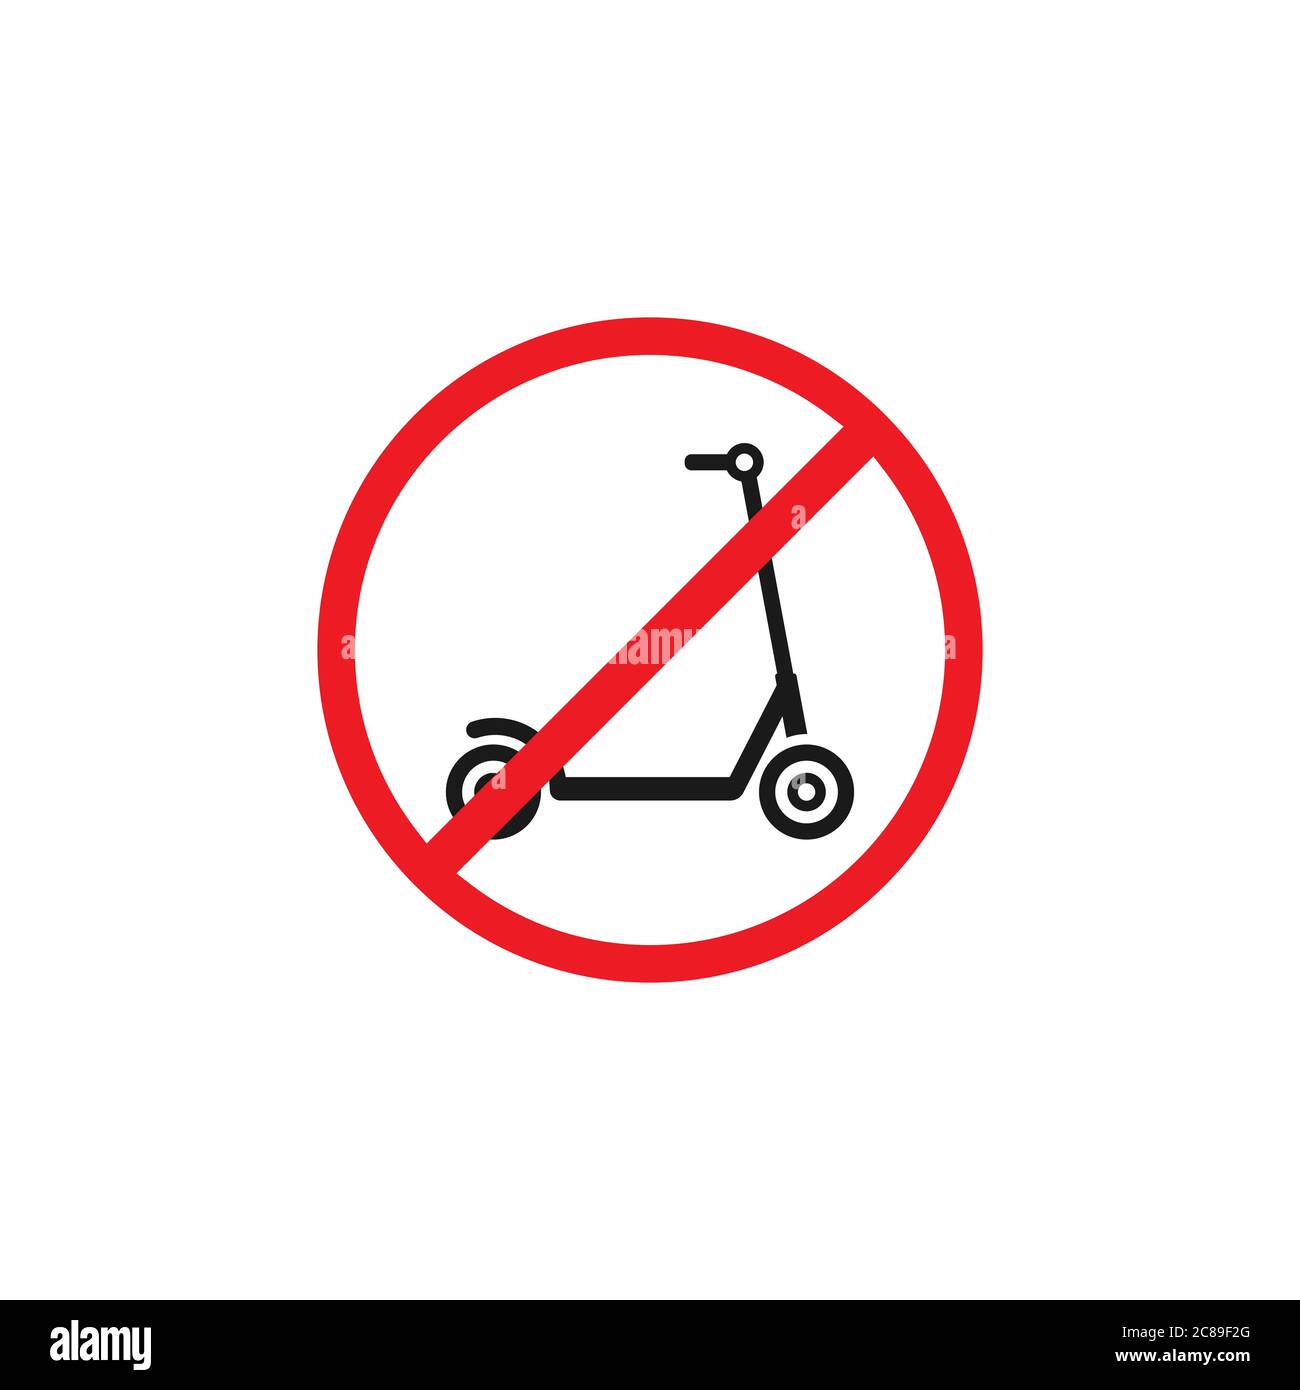 Schwarzer Kick Scooter oder Laufrad in rot gekreuzten Kreis Symbol. Kein Push Scooter s Schild isoliert auf weiß. Vektorgrafik. Verboten, nicht erlaubt tra Stock Vektor